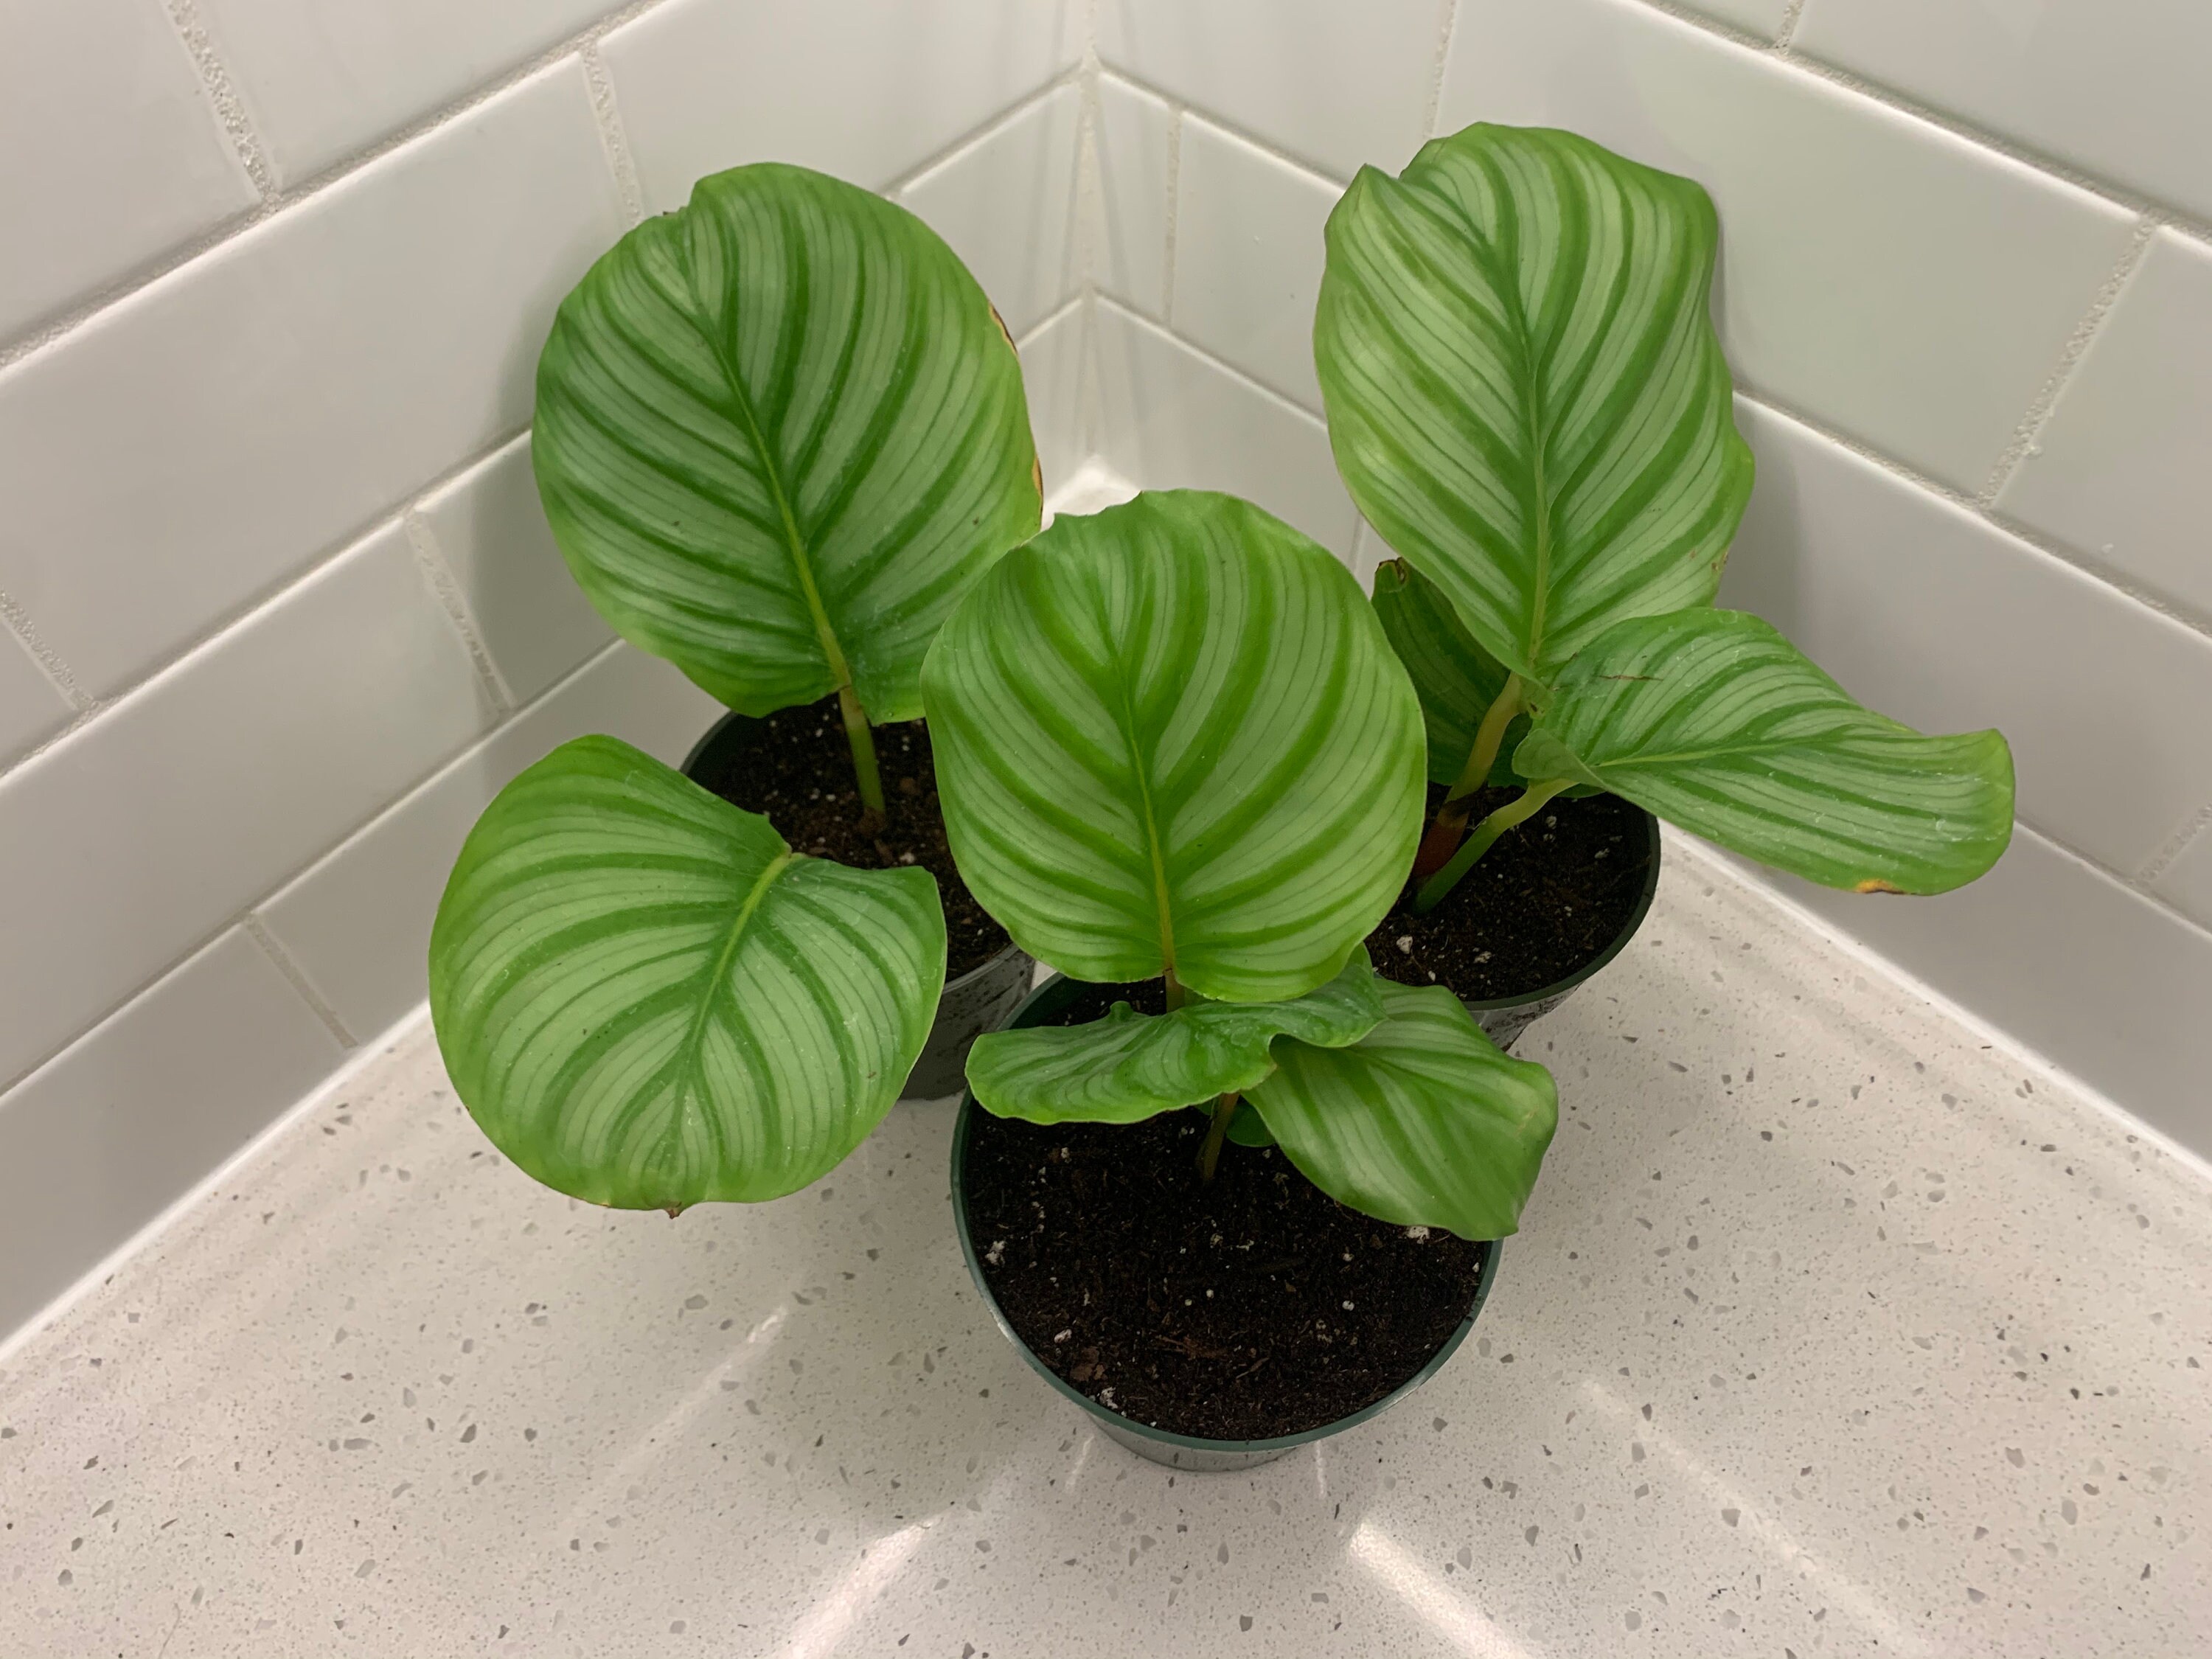  Calathea  Orbifolia Rare  Indoor Plant 4 inch pot